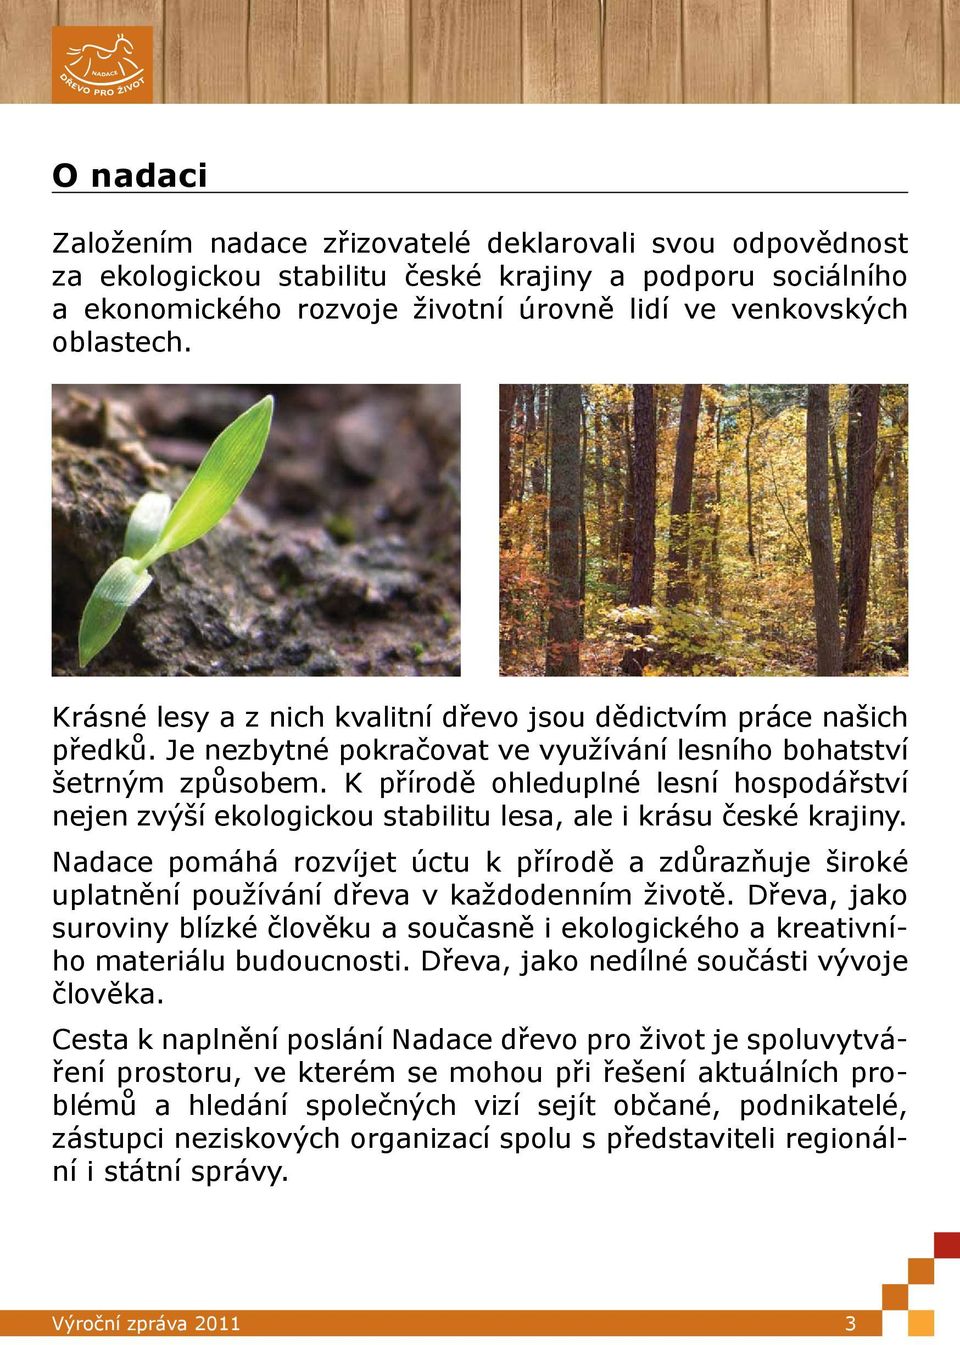 K přírodě ohleduplné lesní hospodářství nejen zvýší ekologickou stabilitu lesa, ale i krásu české krajiny.